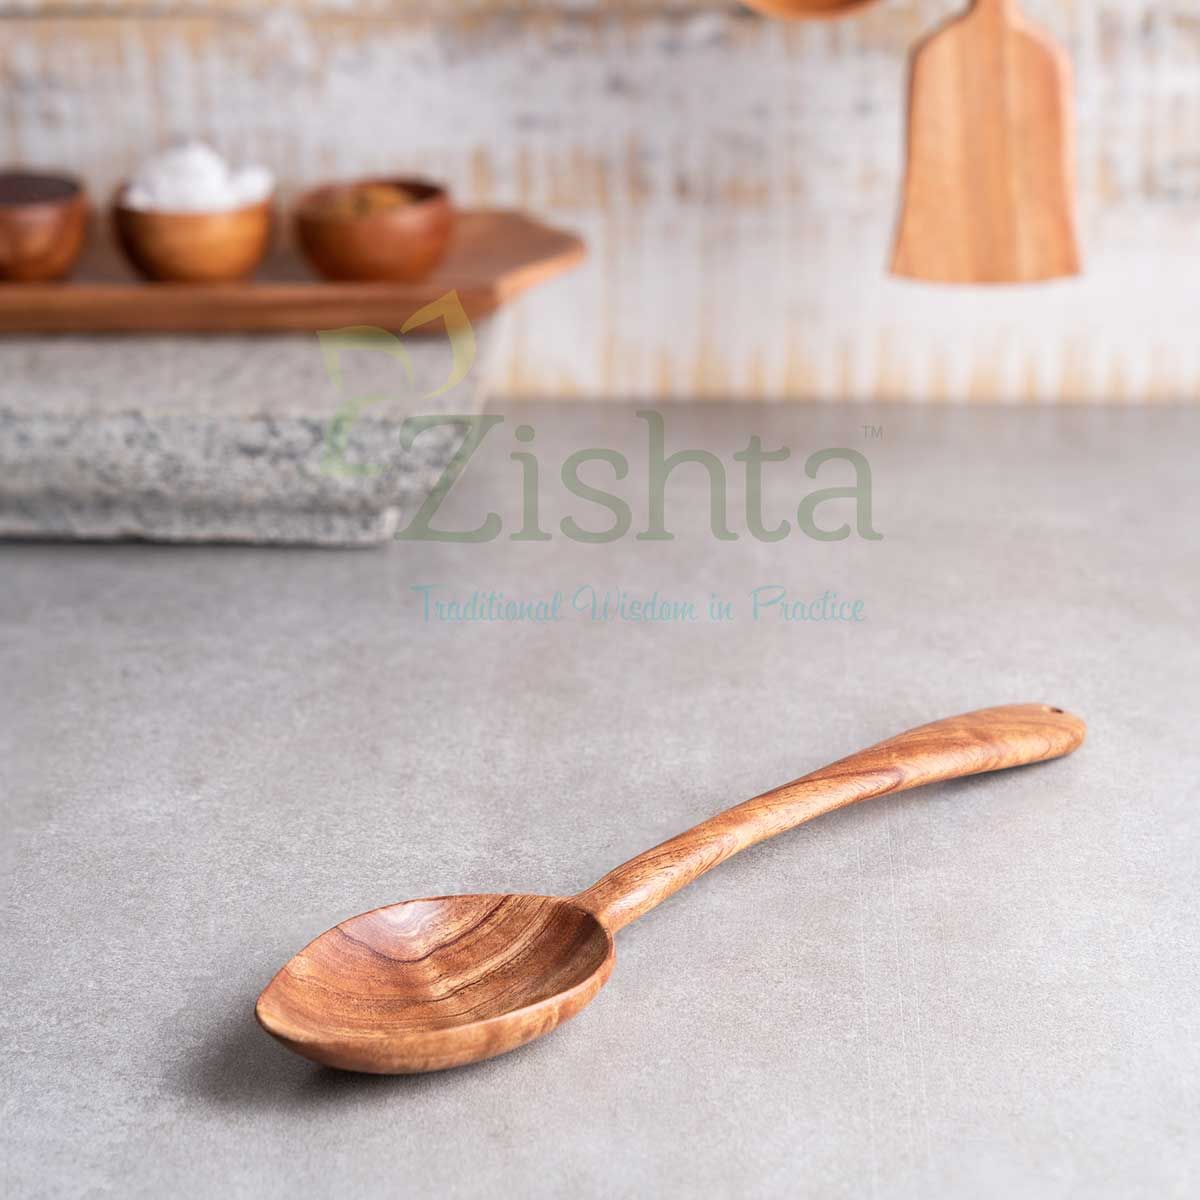 Neem Wood Dal Ladle-Zishta Traditional Cookware